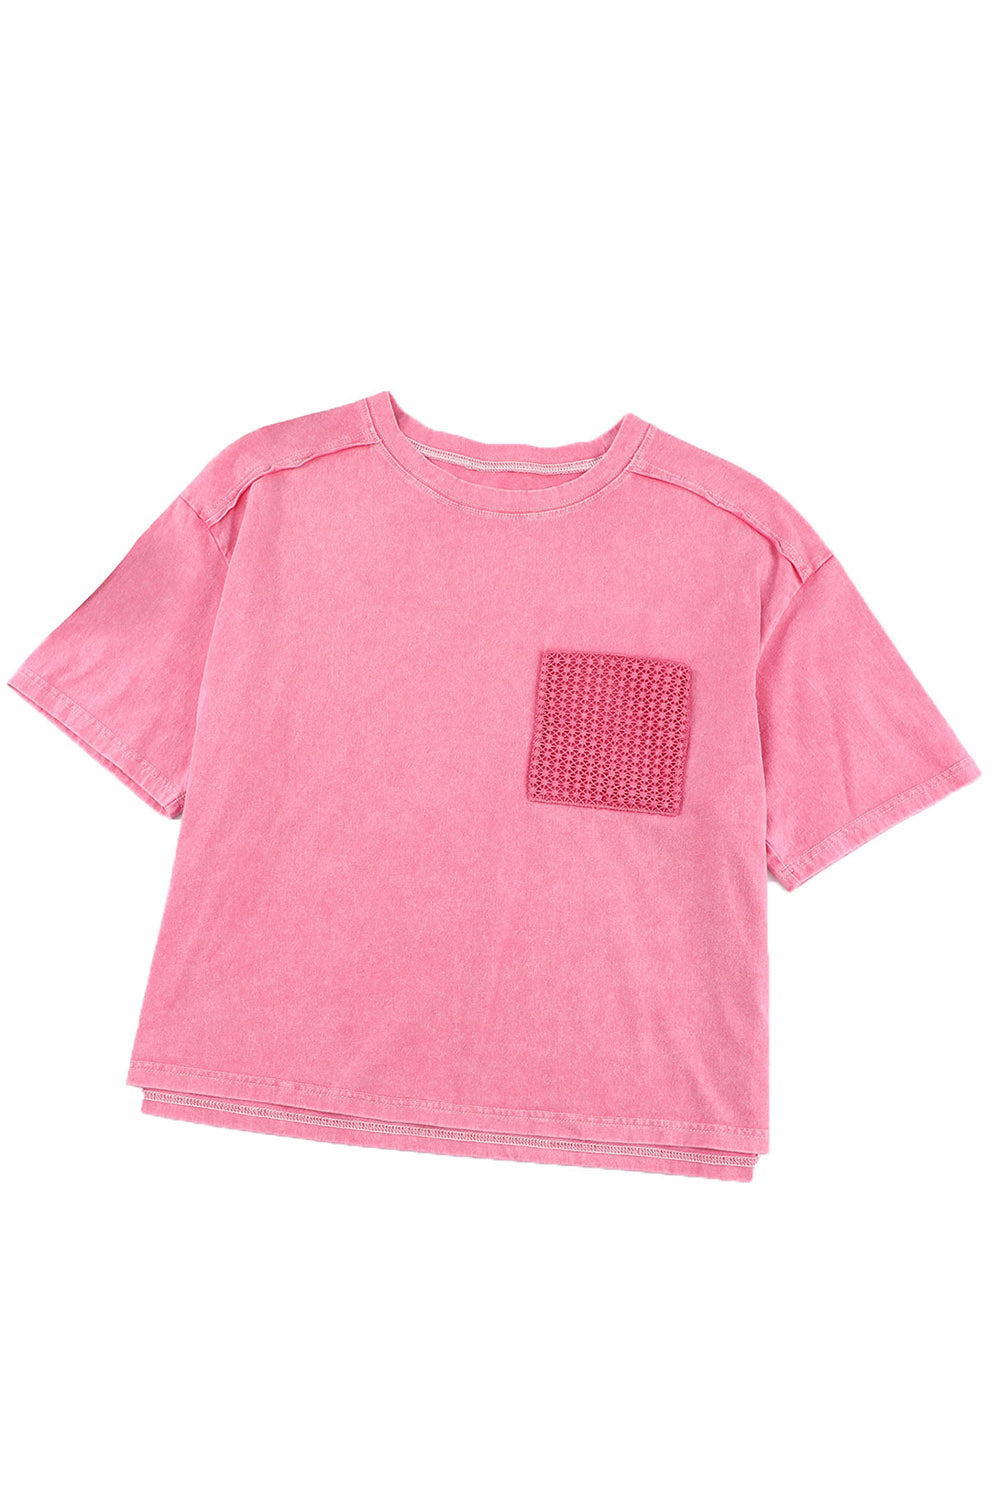 Rosafarbenes T-Shirt mit aufgesetzter Tasche und Spitze in Acid-Waschung